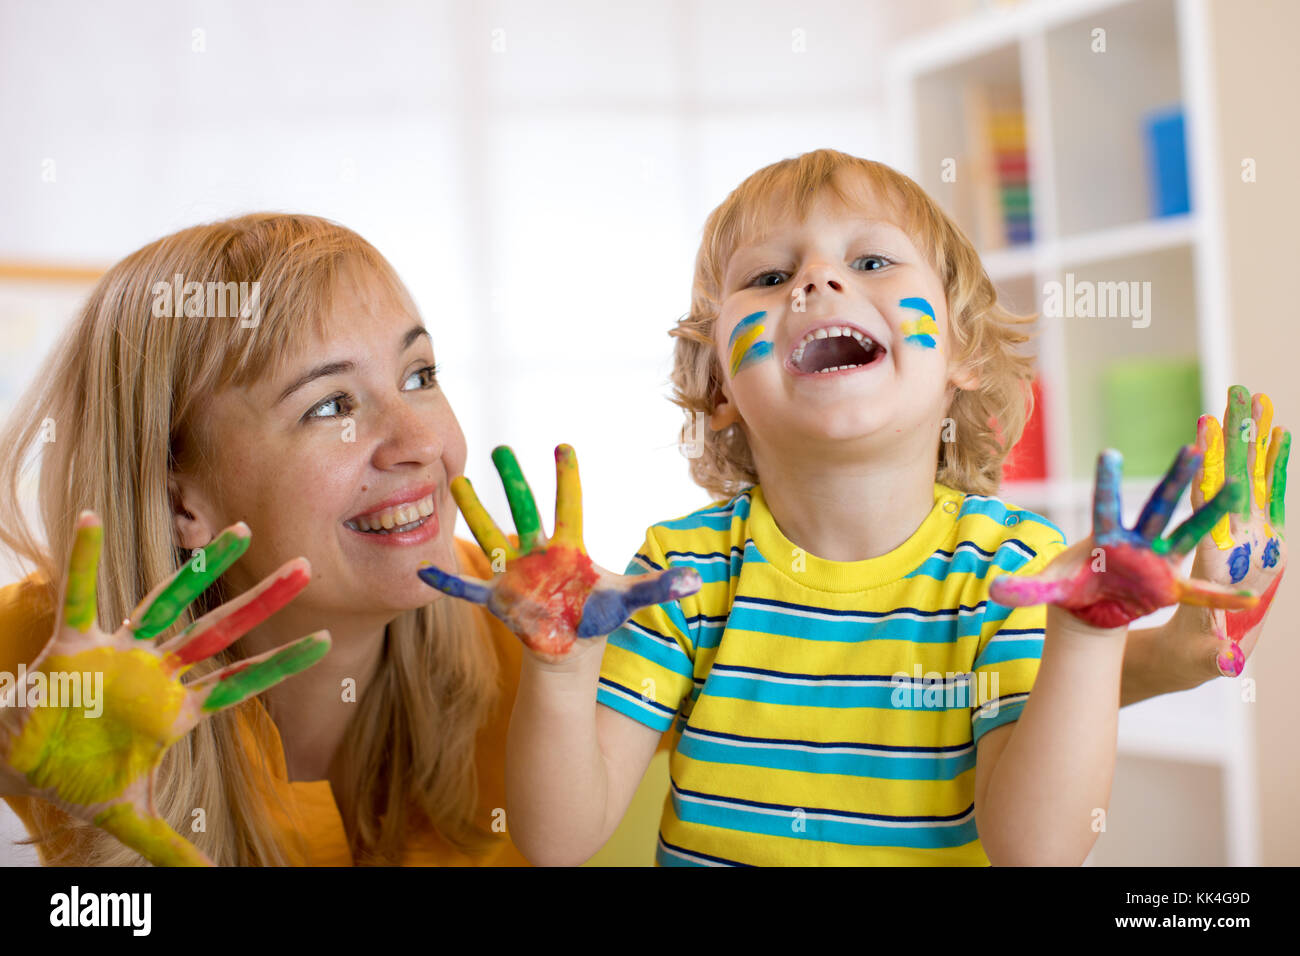 Lächelnd Kind Junge und seine Mutter Spaß und zeigt Hände in bunten Farben lackiert Stockfoto